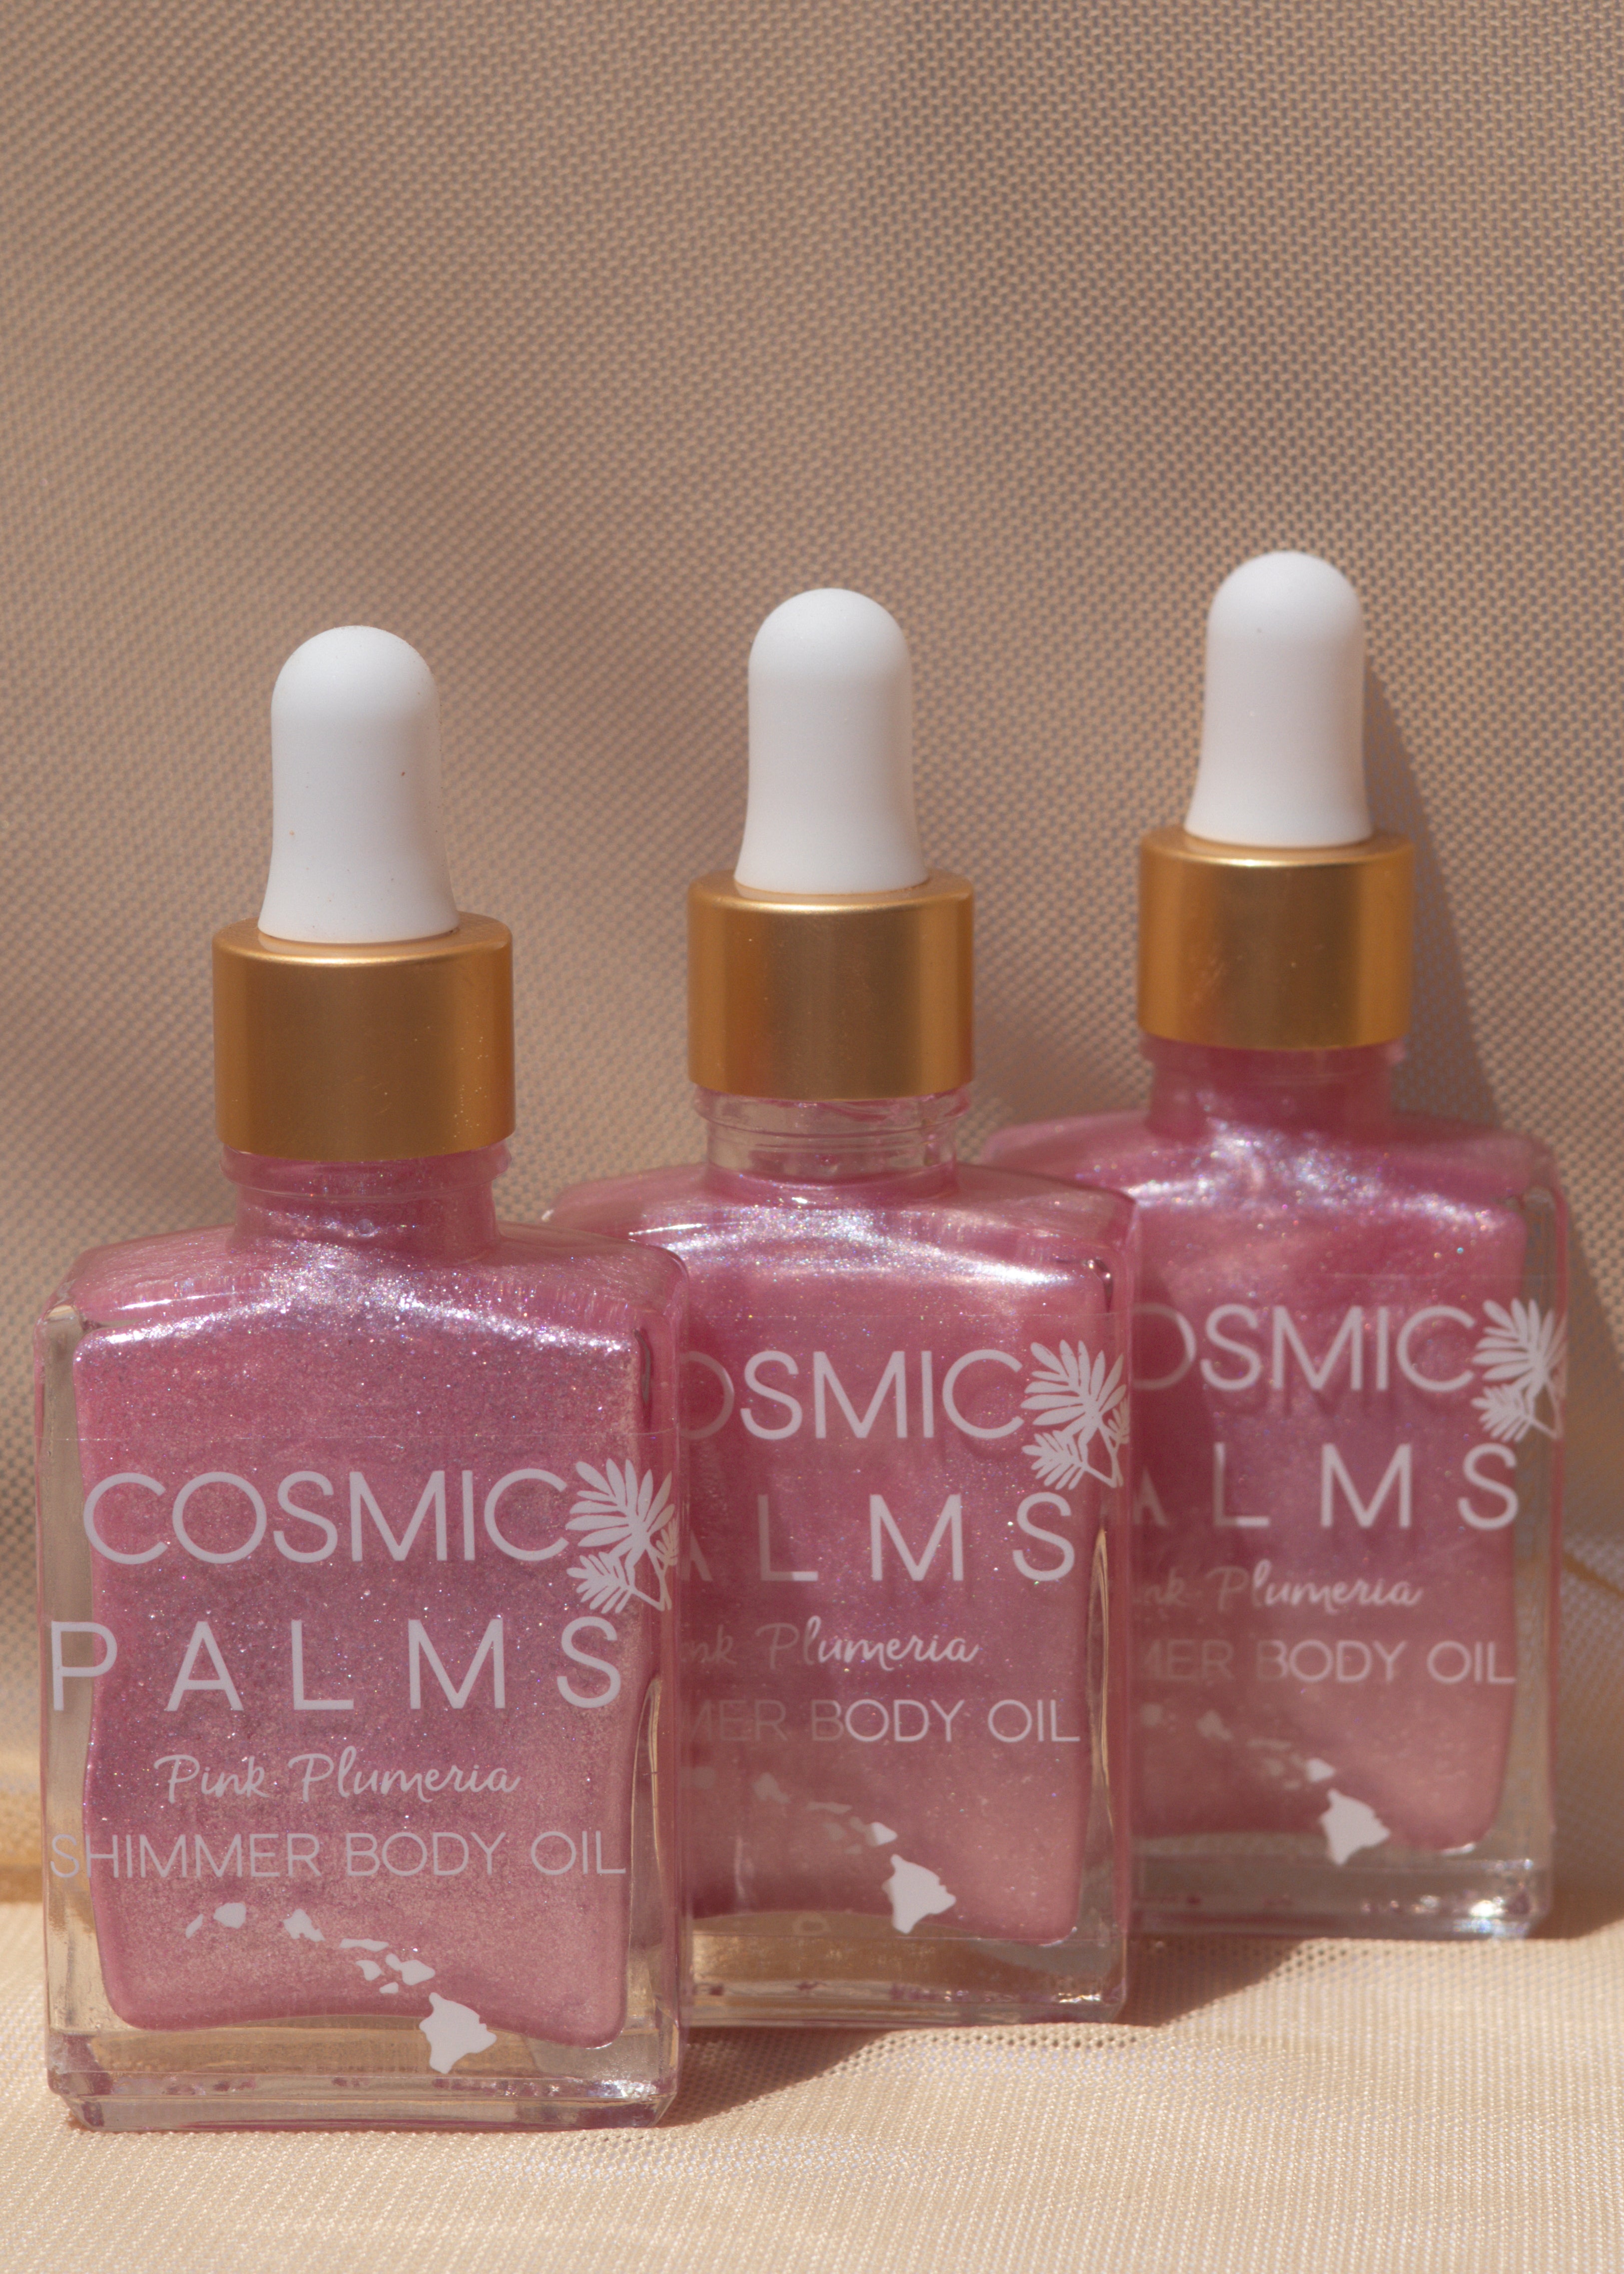 Pink Plumeria Shimmer Body Oil